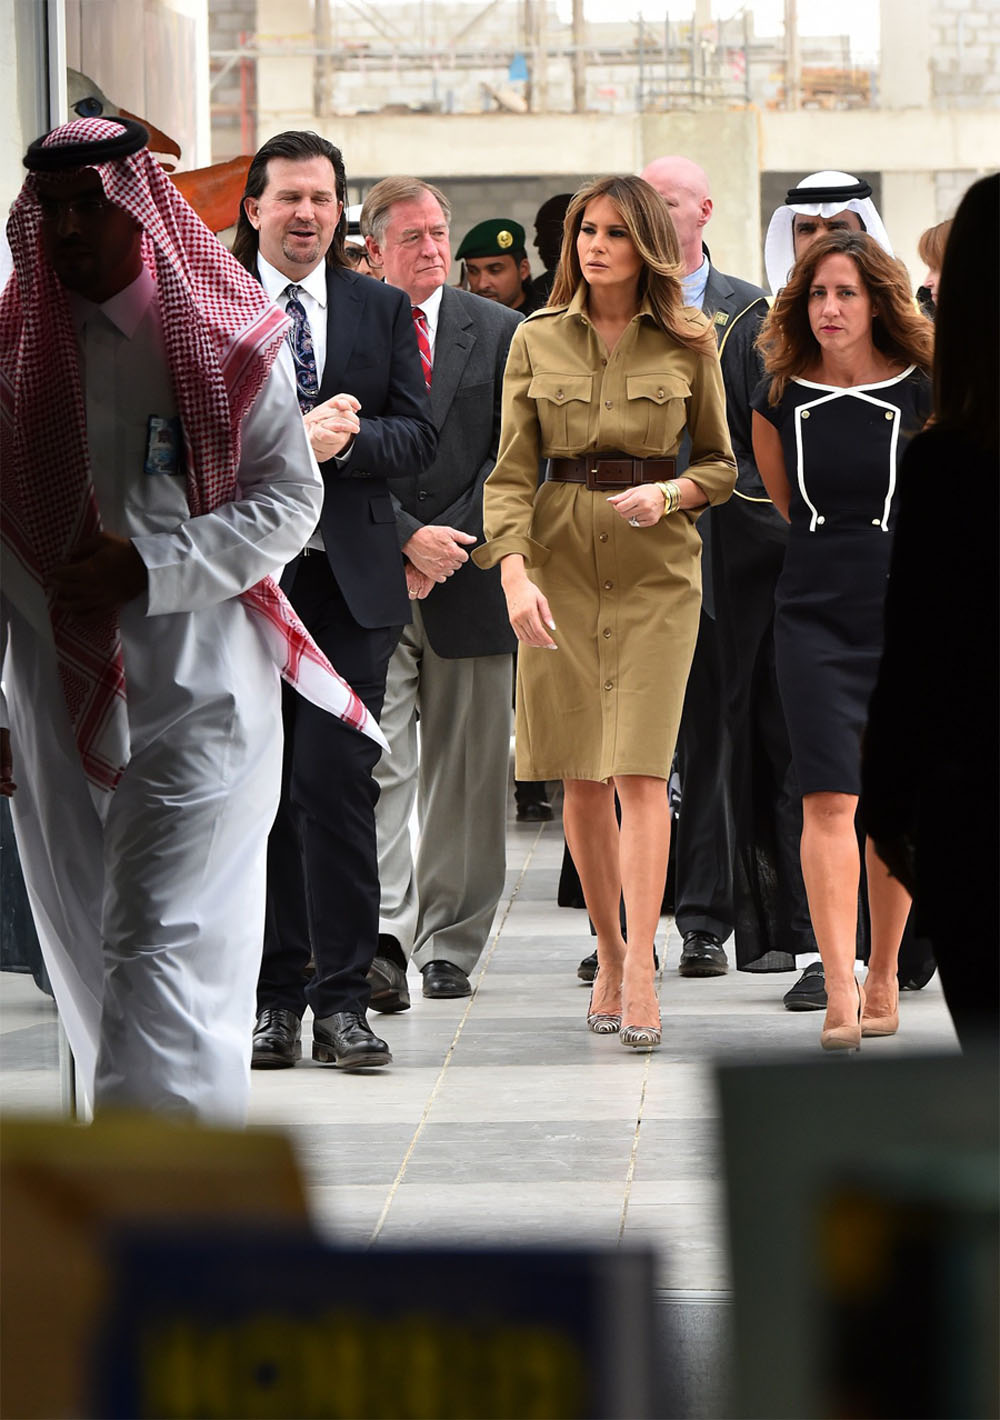   زوجة ترامب تزور مدرسة أمريكية فى السعودية